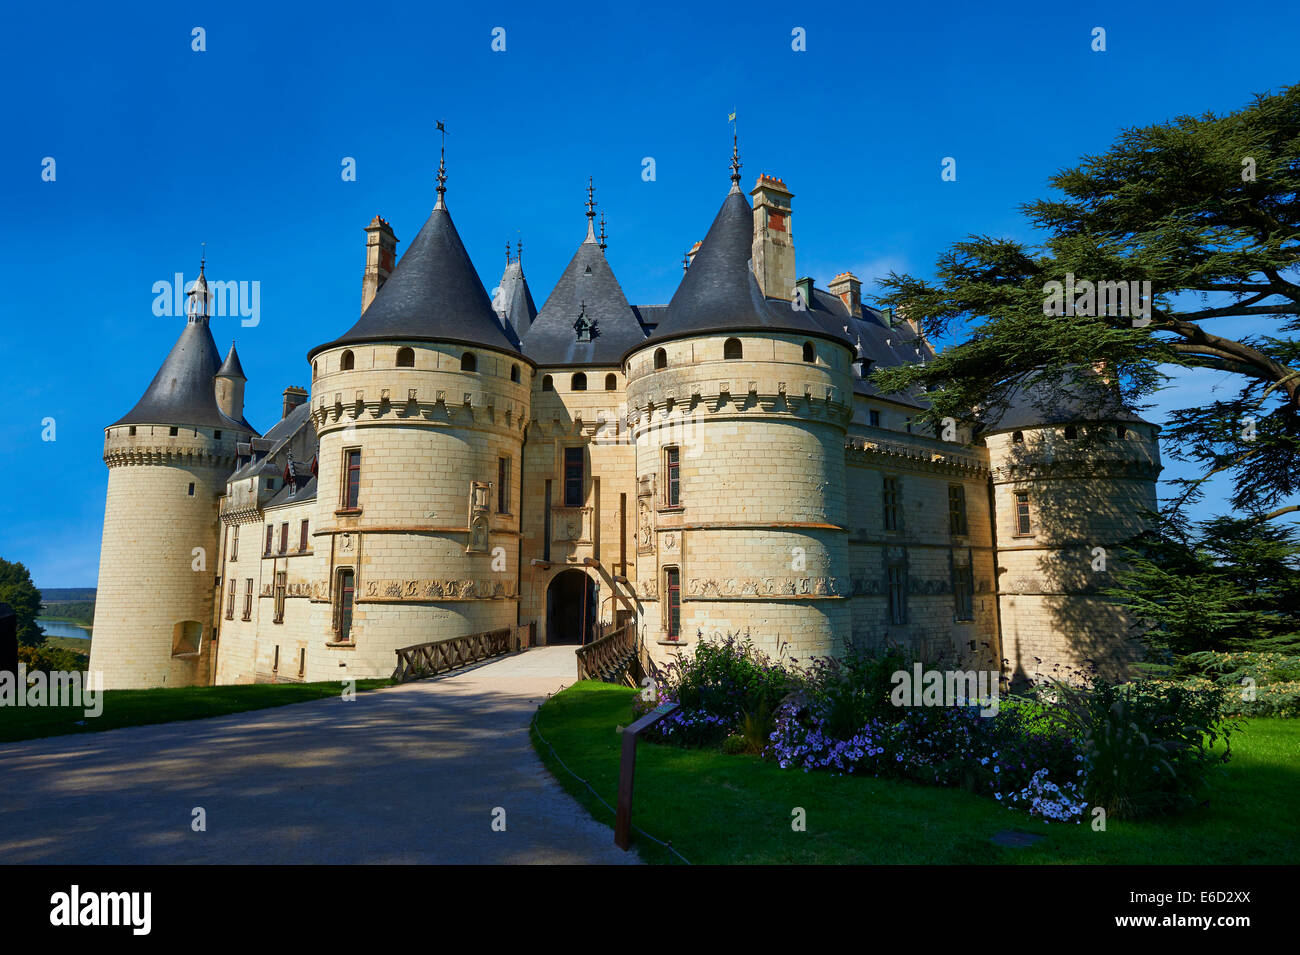 Chateau de Chaumont castle, 15th century, Chaumont-sur-Loire, Loir-et-Cher, France Stock Photo